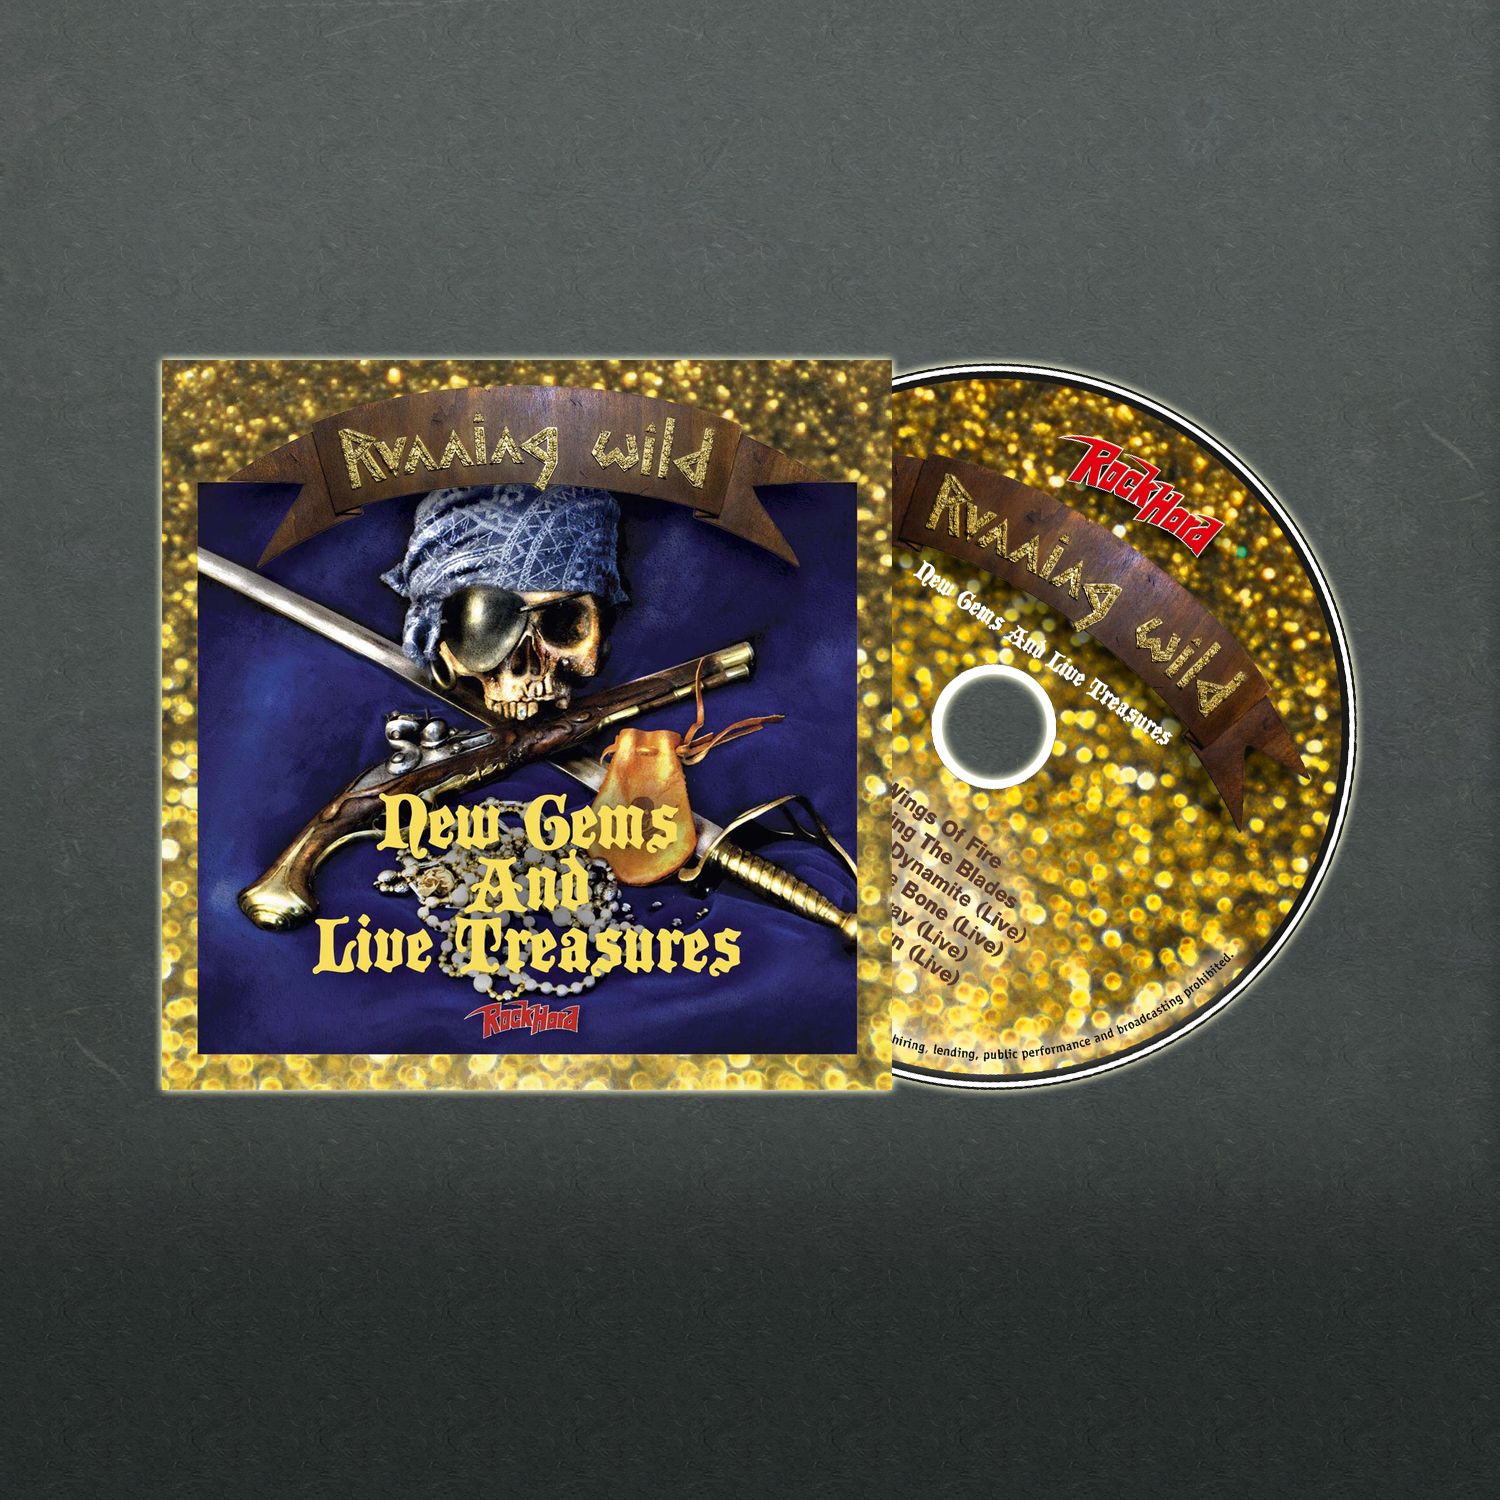 Rock Hard Vol. 413 erscheint mit exklusiver CD